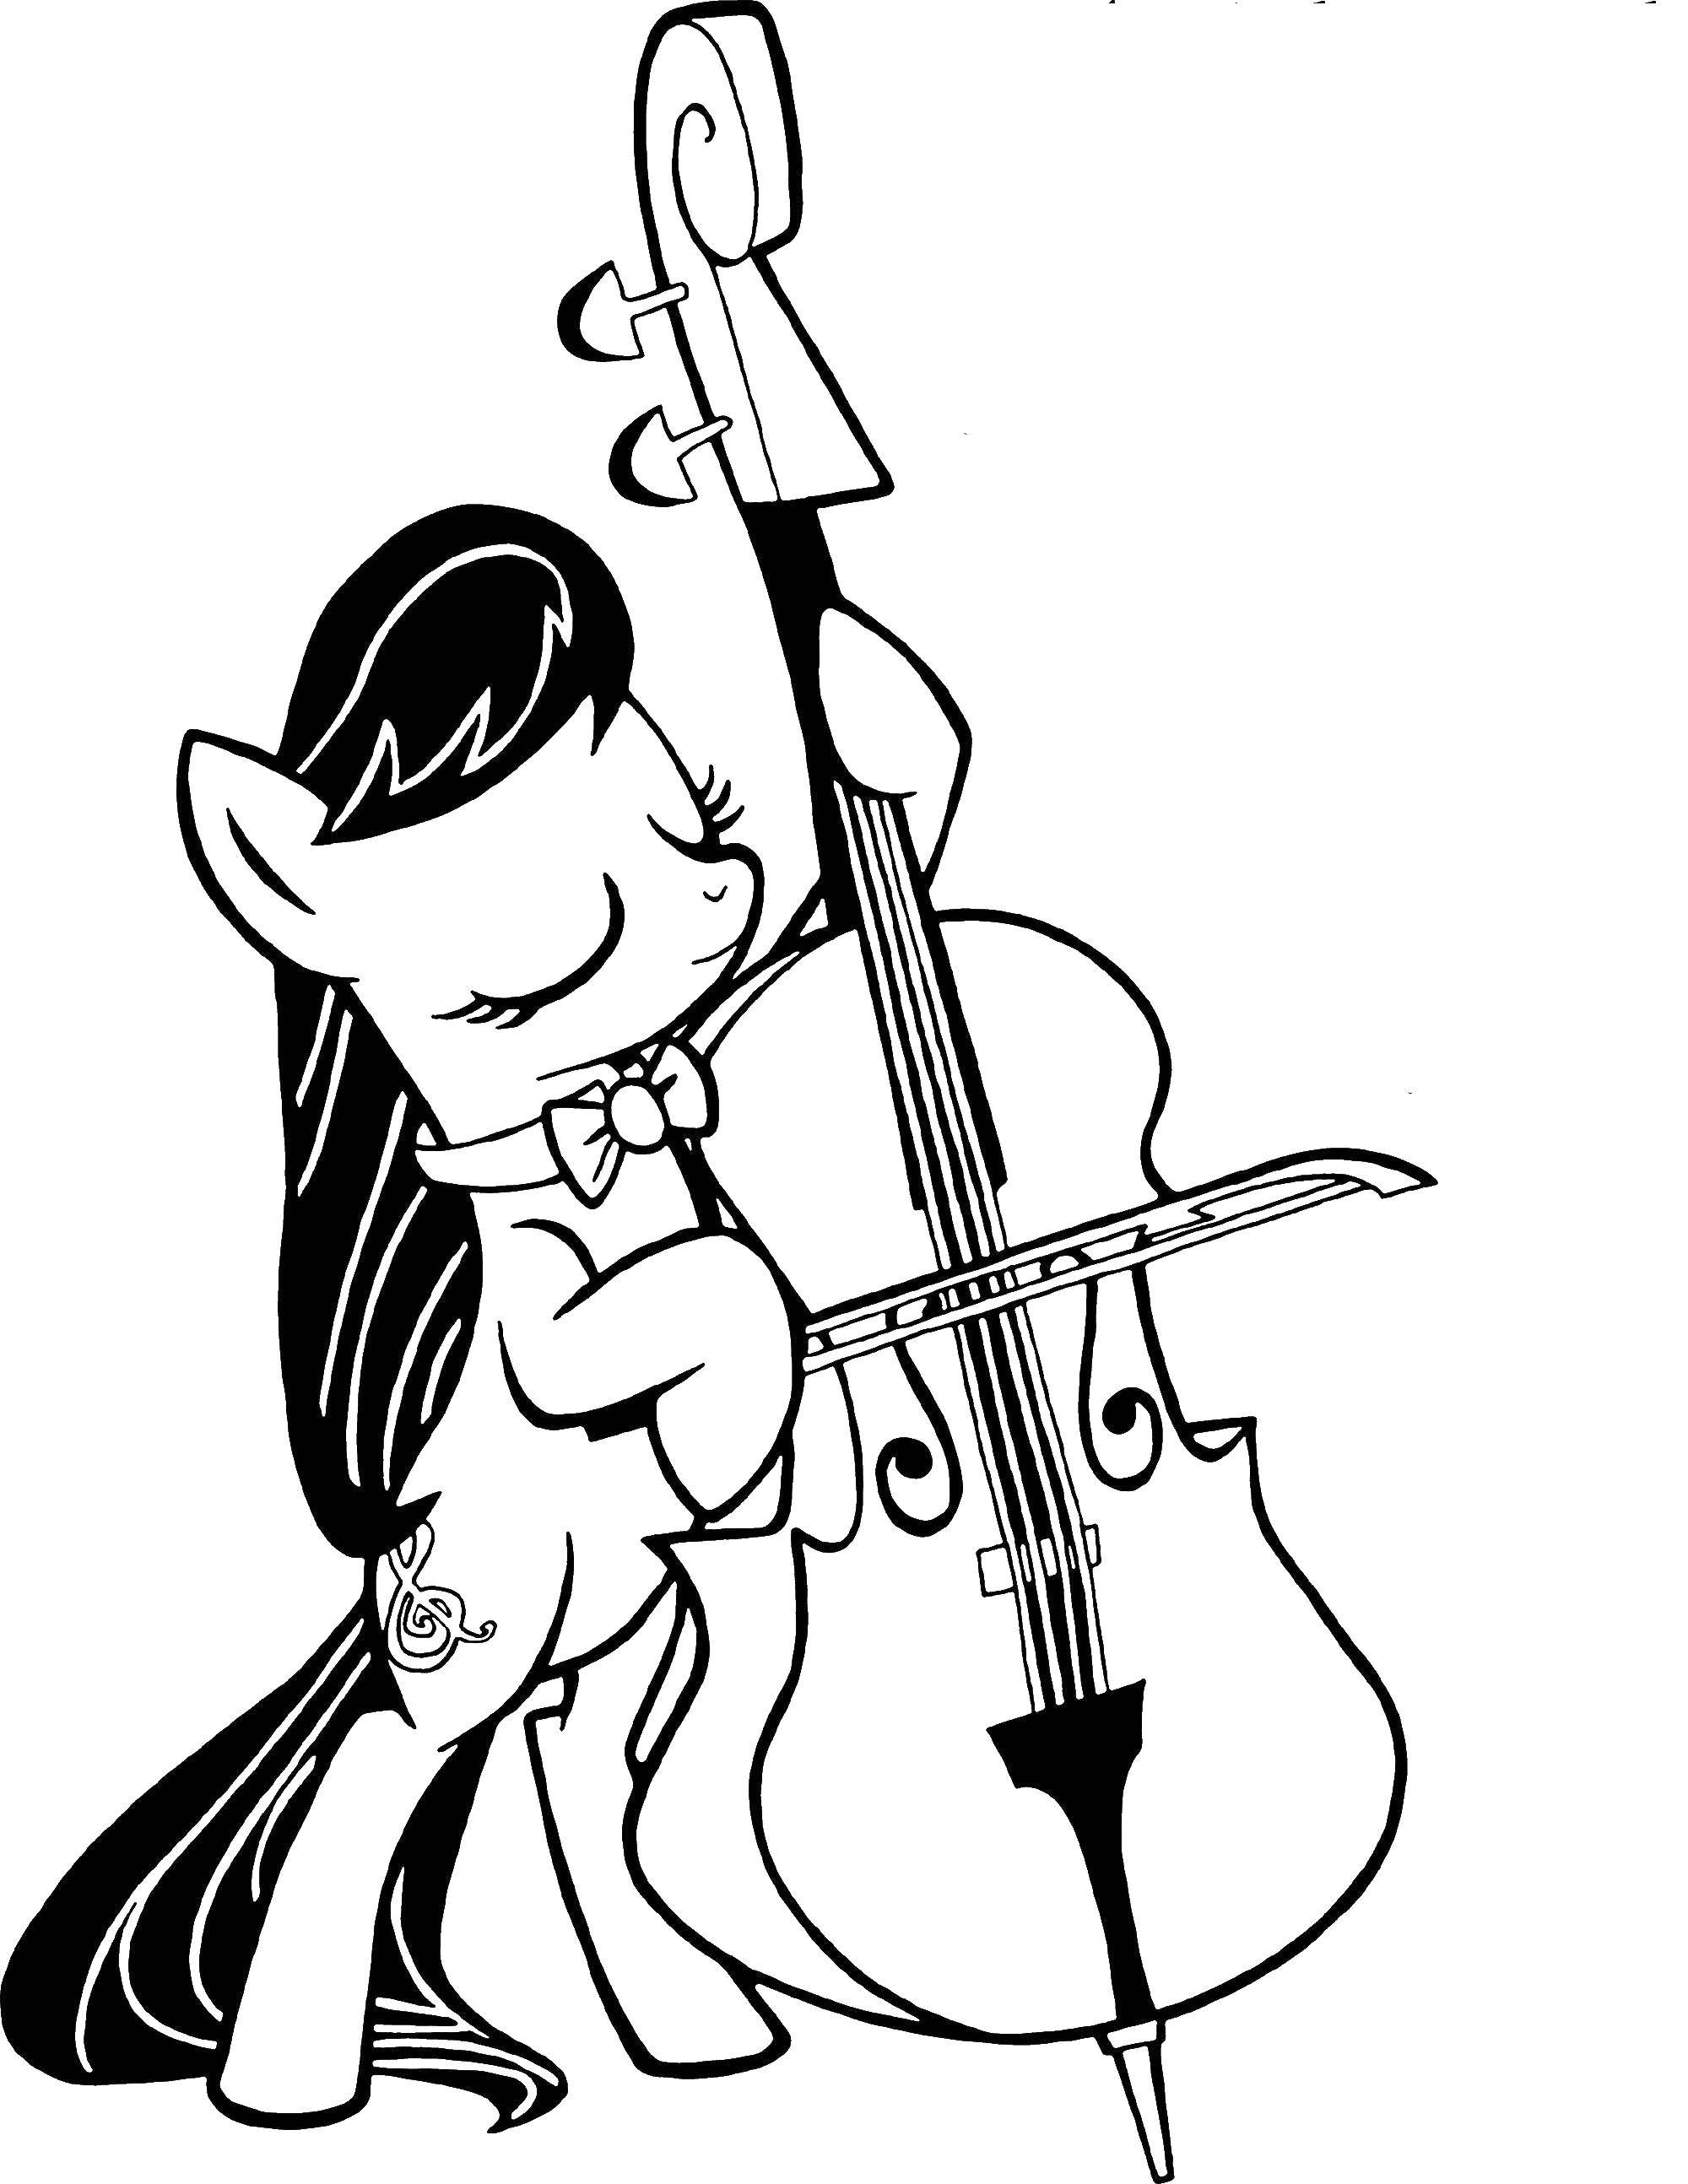  Пони из my little pony  играет на скрипке